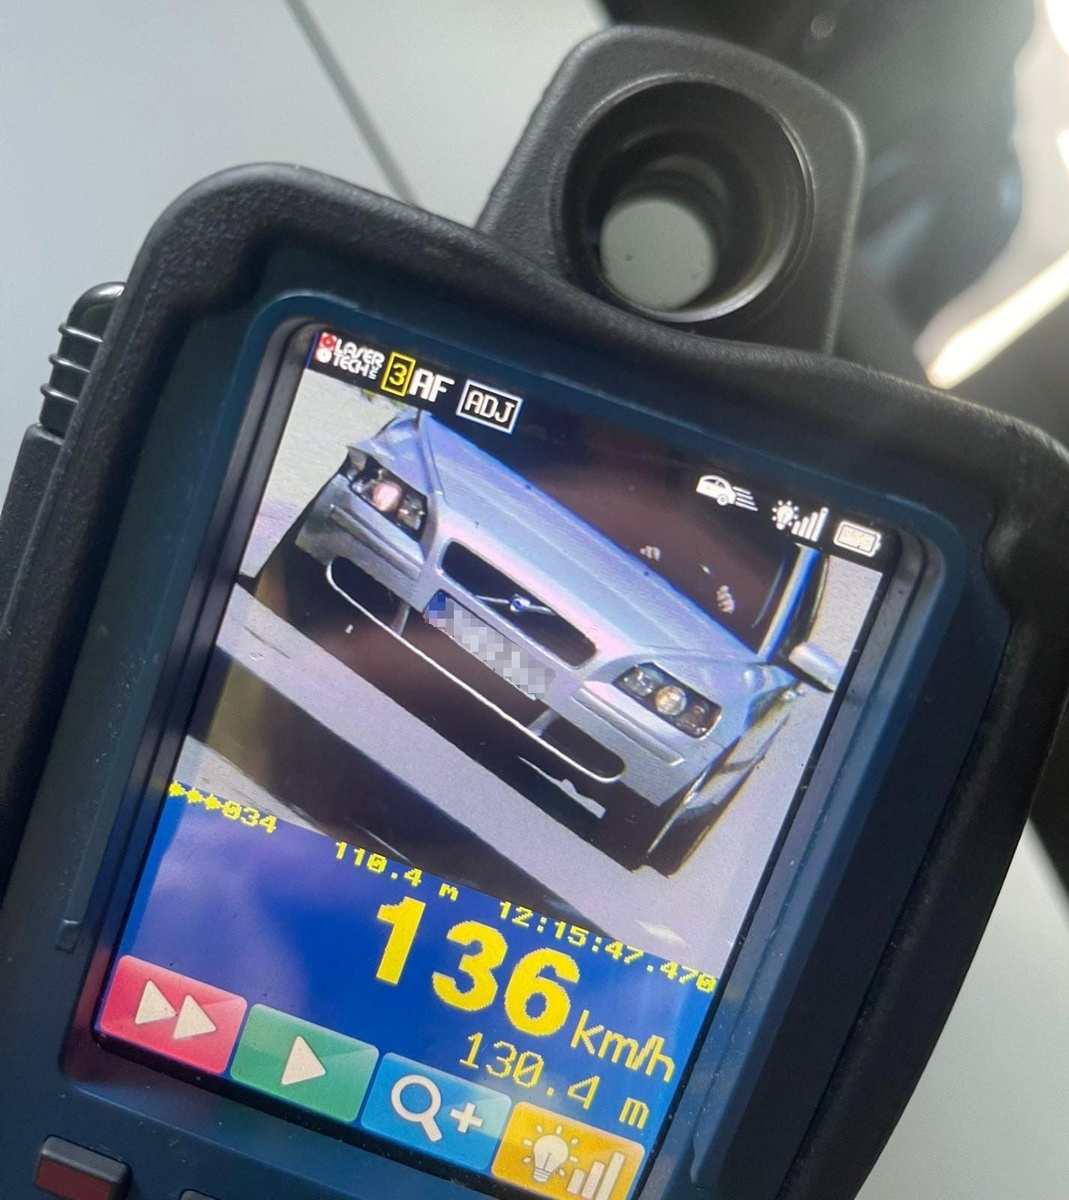 policyjne urządzenie do pomiaru prędkości, na którego monitorze widać pojazd